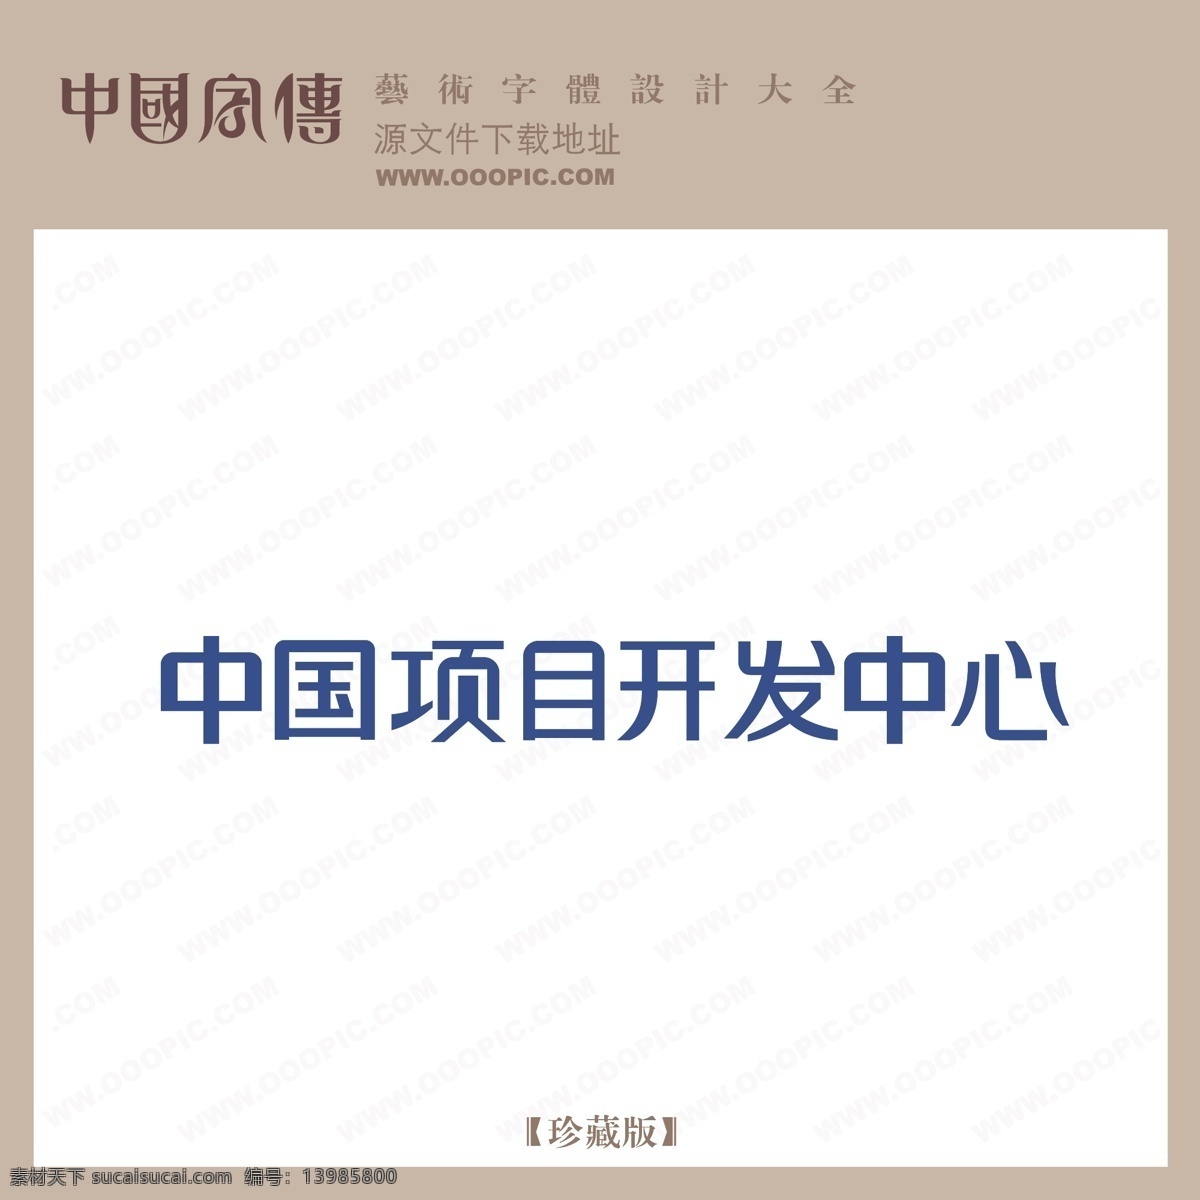 中国 项目开发 中心 矢量图 艺术字